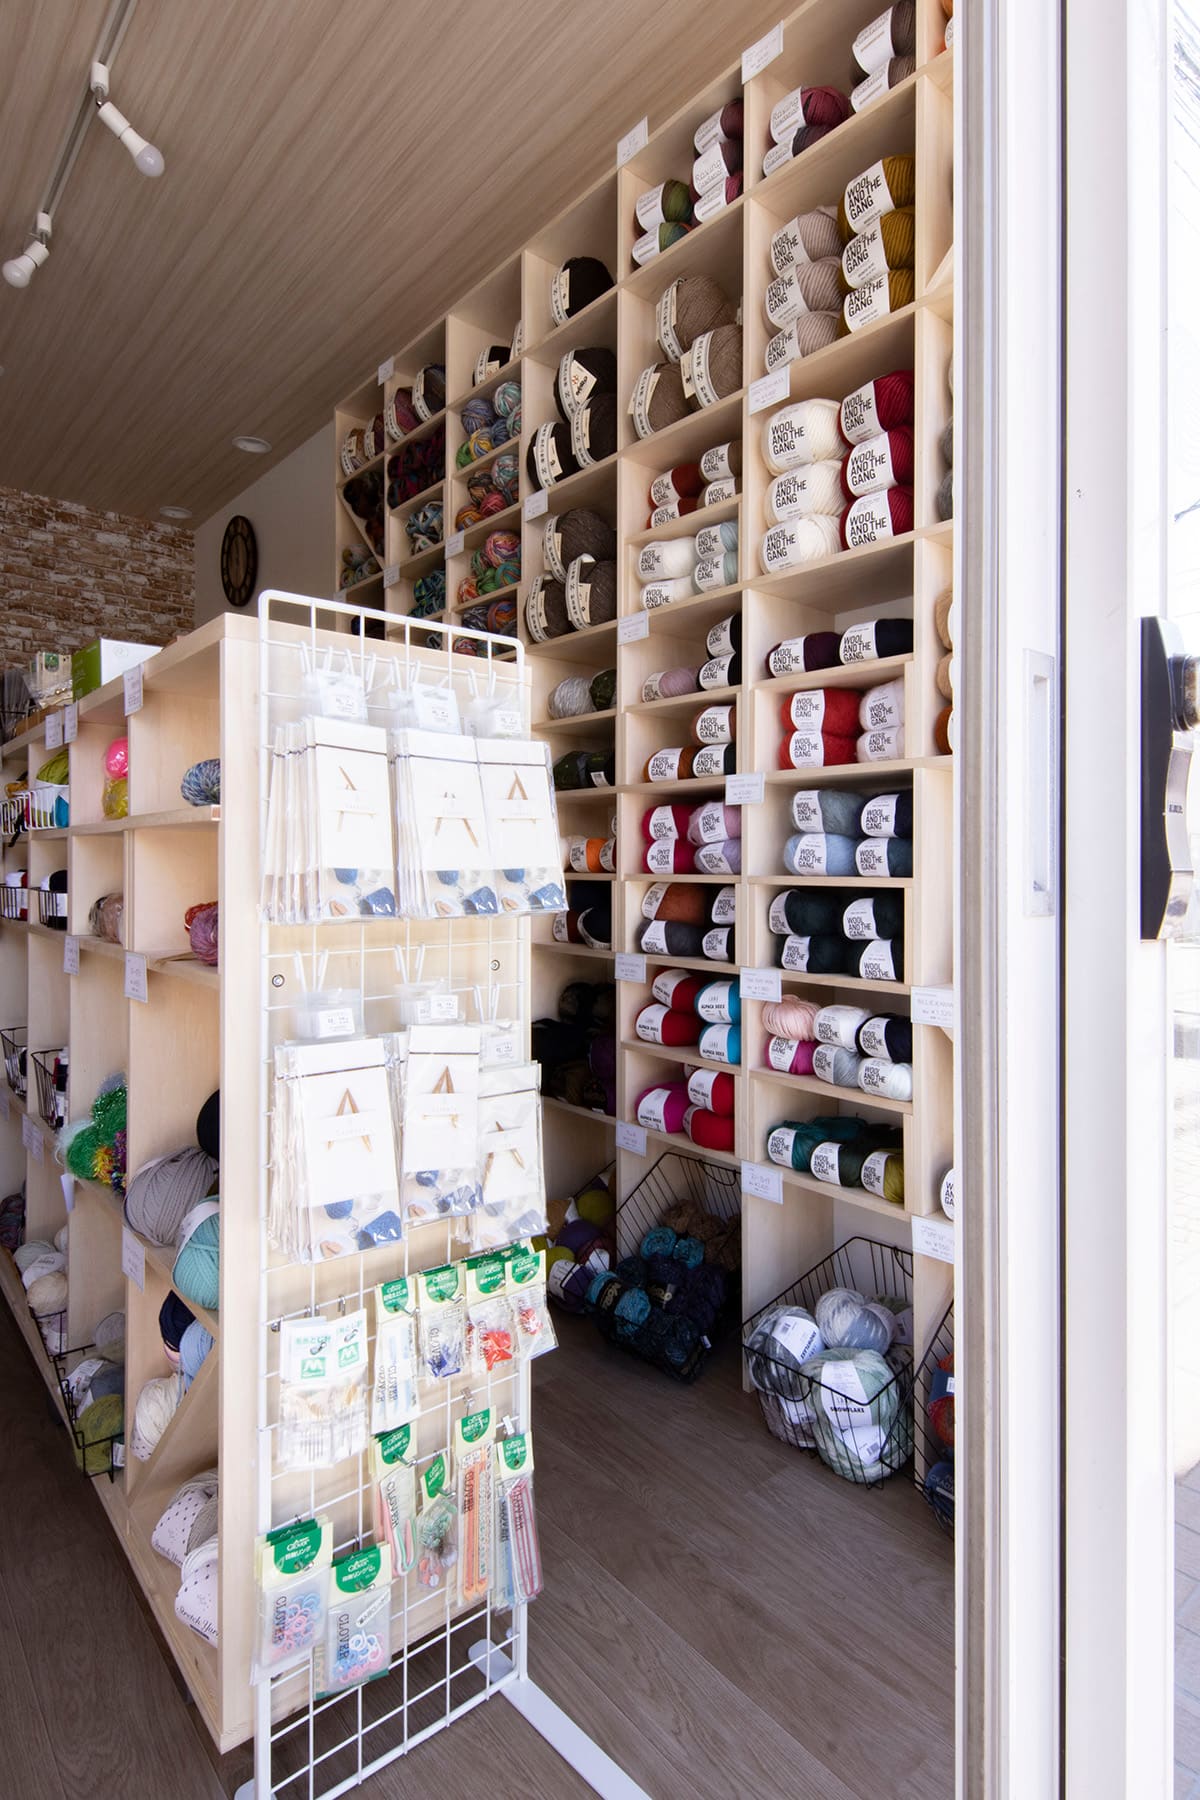 街の毛糸屋さん 鎌倉きゅっＱ 糸の相談、材料の取寄せ手配